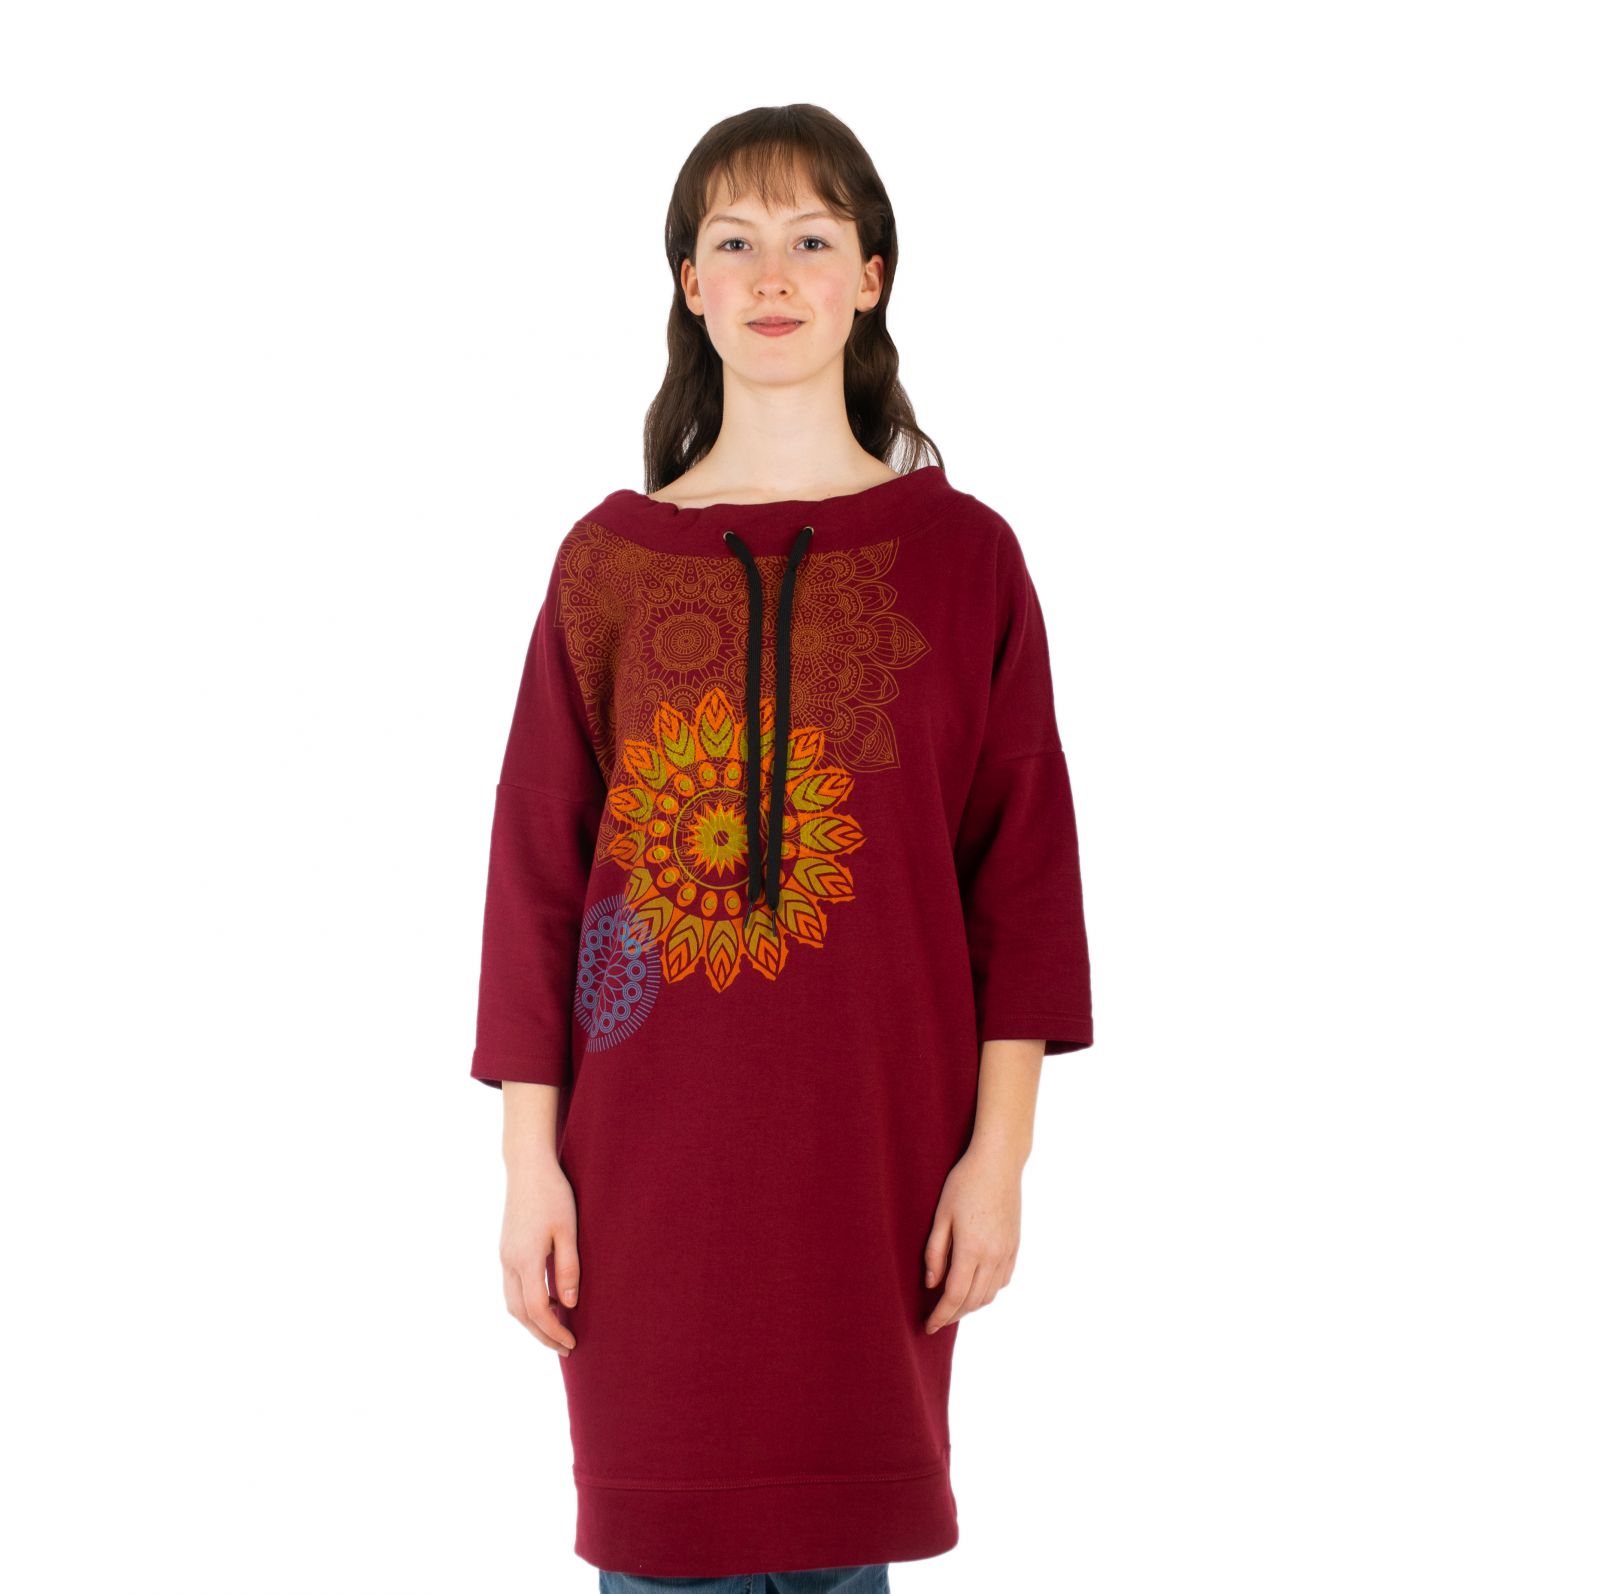 Bluza sukienkowa Alisha Burgundy Nepal